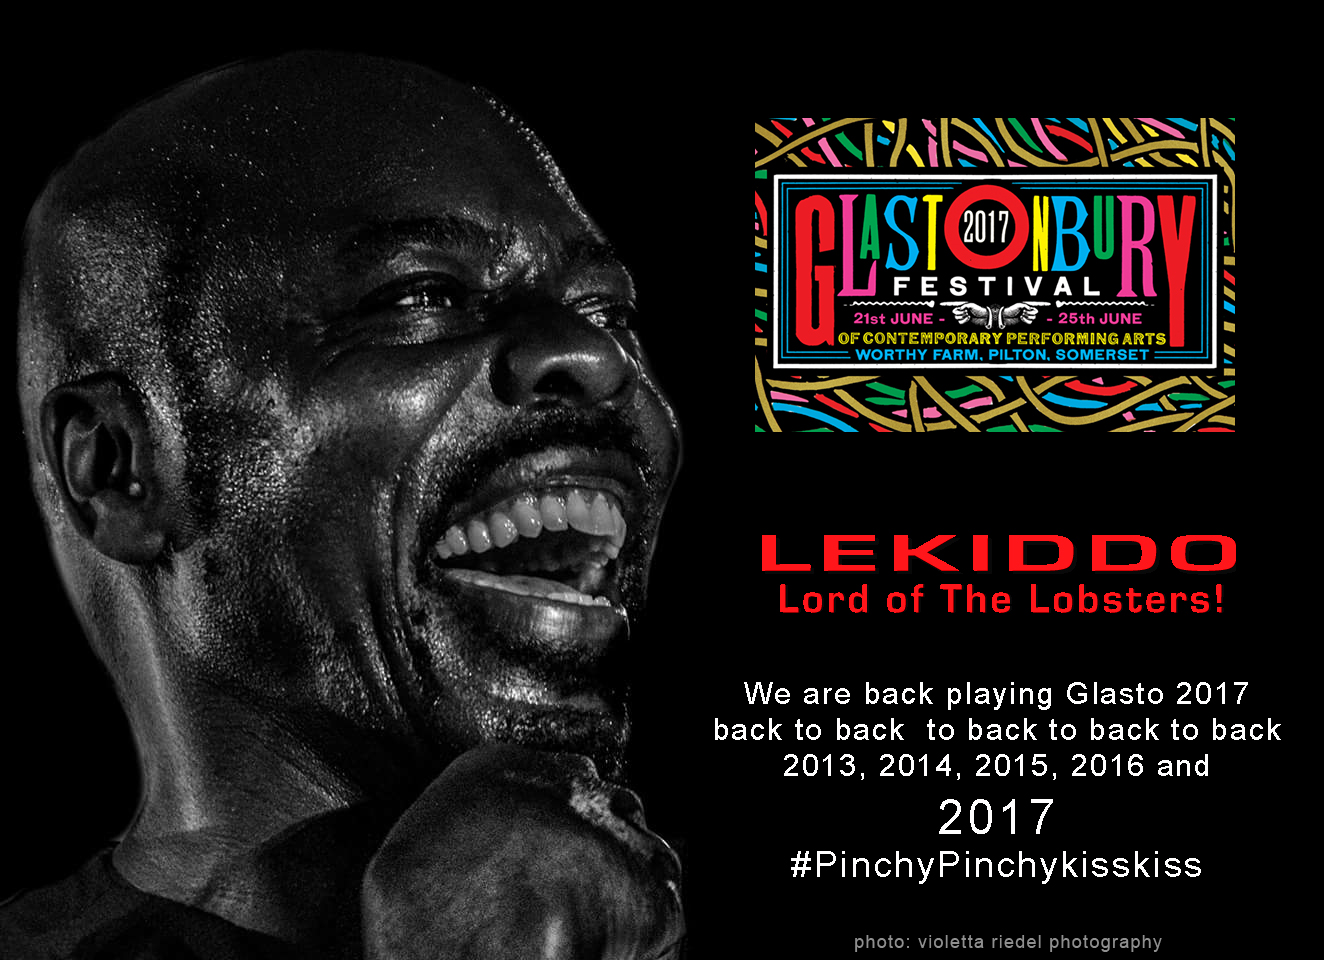 LEKIDDO - Lord of The Lobsters! #PinchyPinchykisskiss Glasto 2017